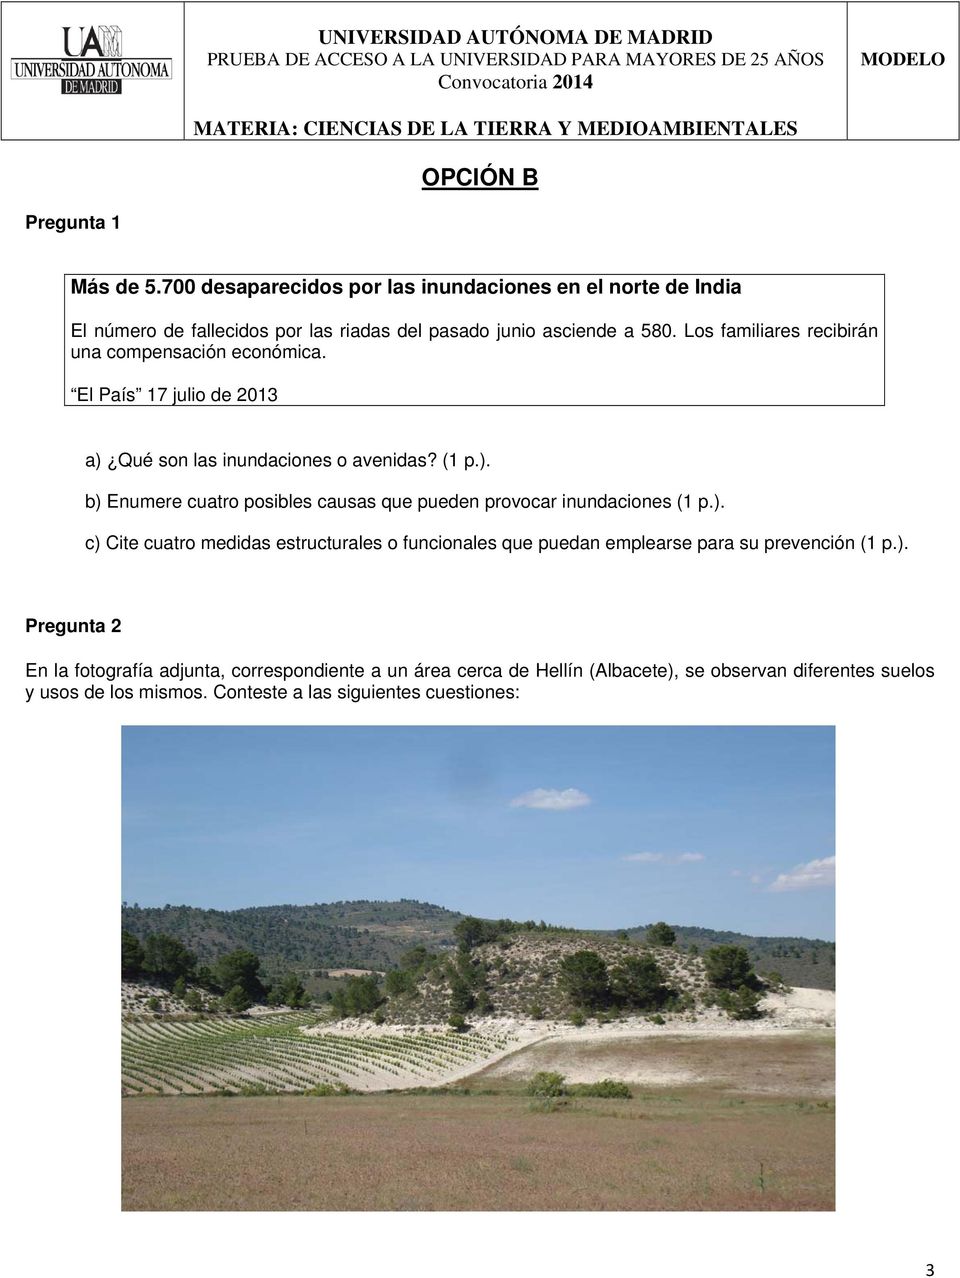 ). c) Cite cuatro medidas estructurales o funcionales que puedan emplearse para su prevención (1 p.). Pregunta 2 En la fotografía adjunta, correspondiente a un área cerca de Hellín (Albacete), se observan diferentes suelos y usos de los mismos.